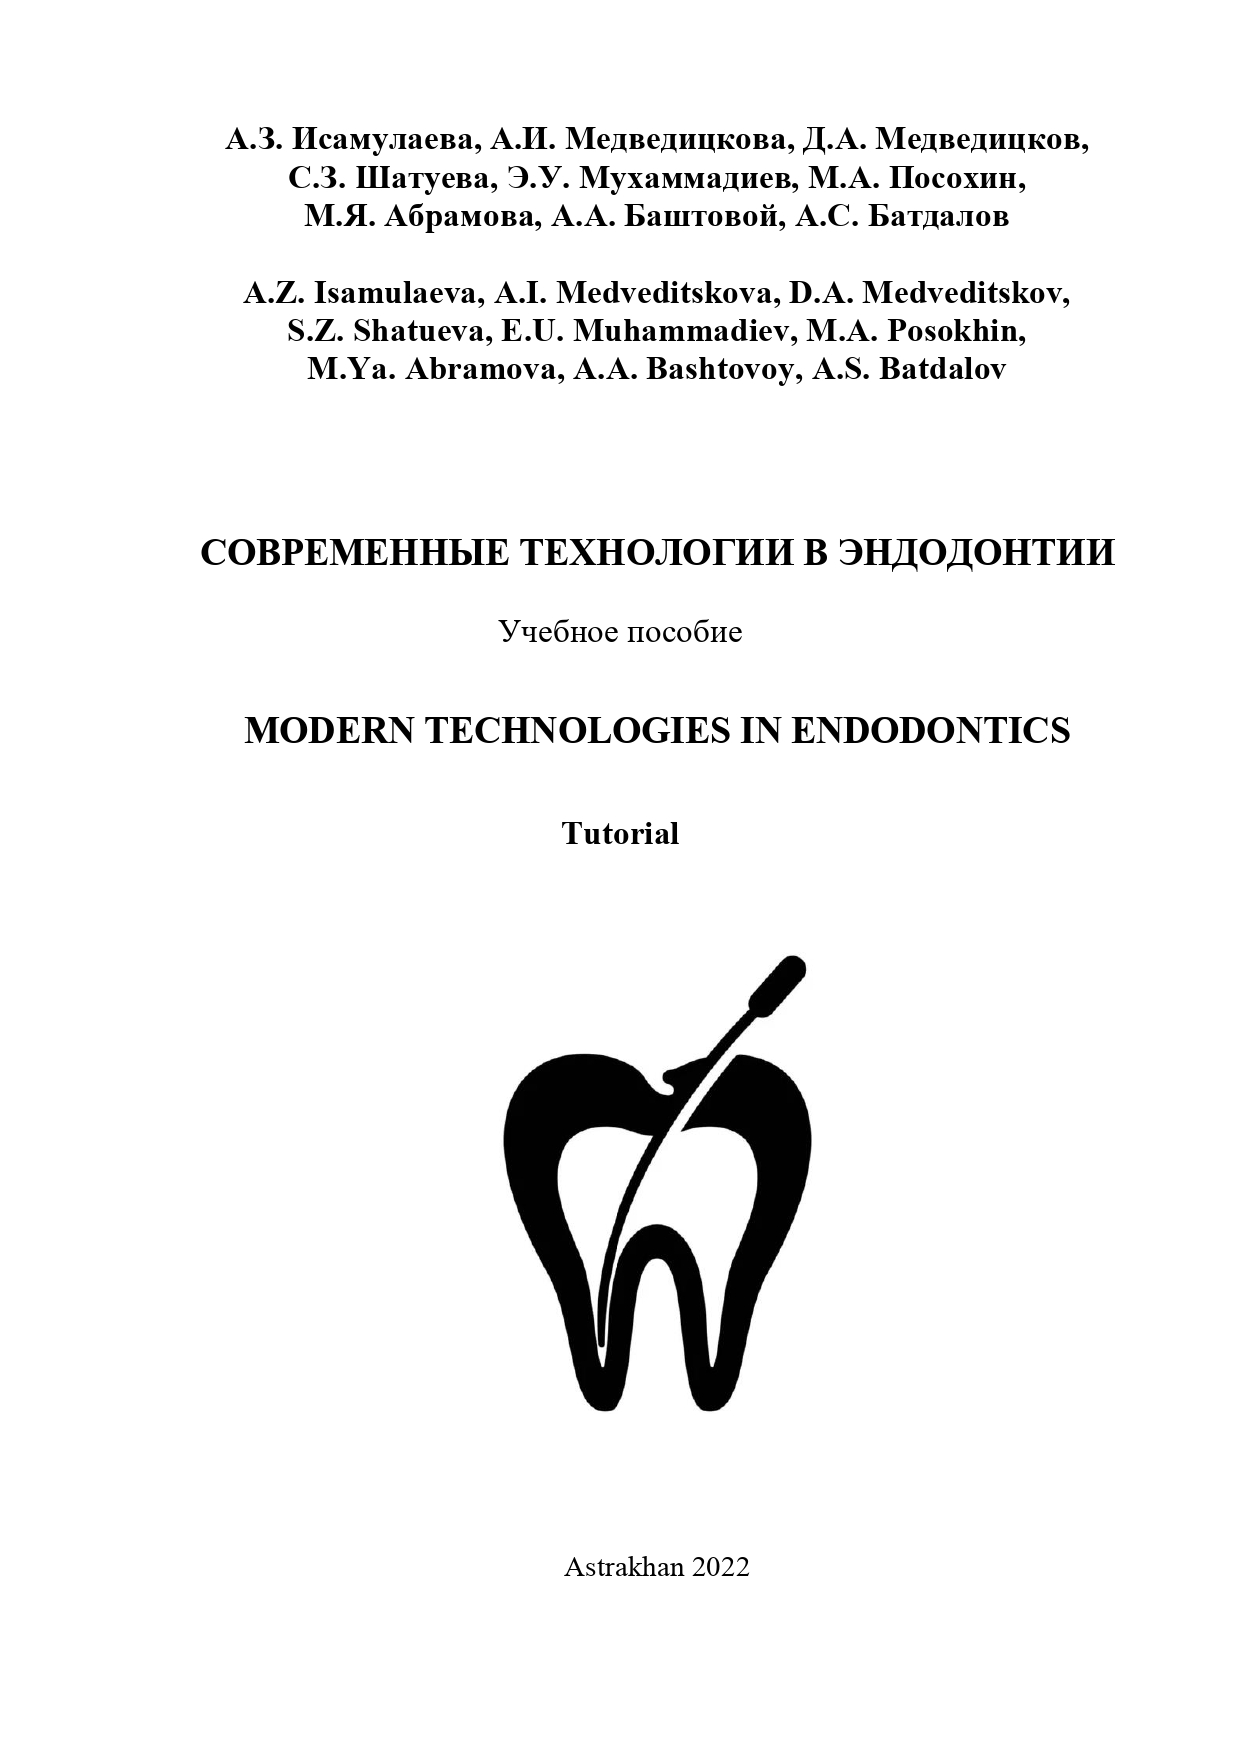 Современные технологии в эндодонтии : учебное пособие.